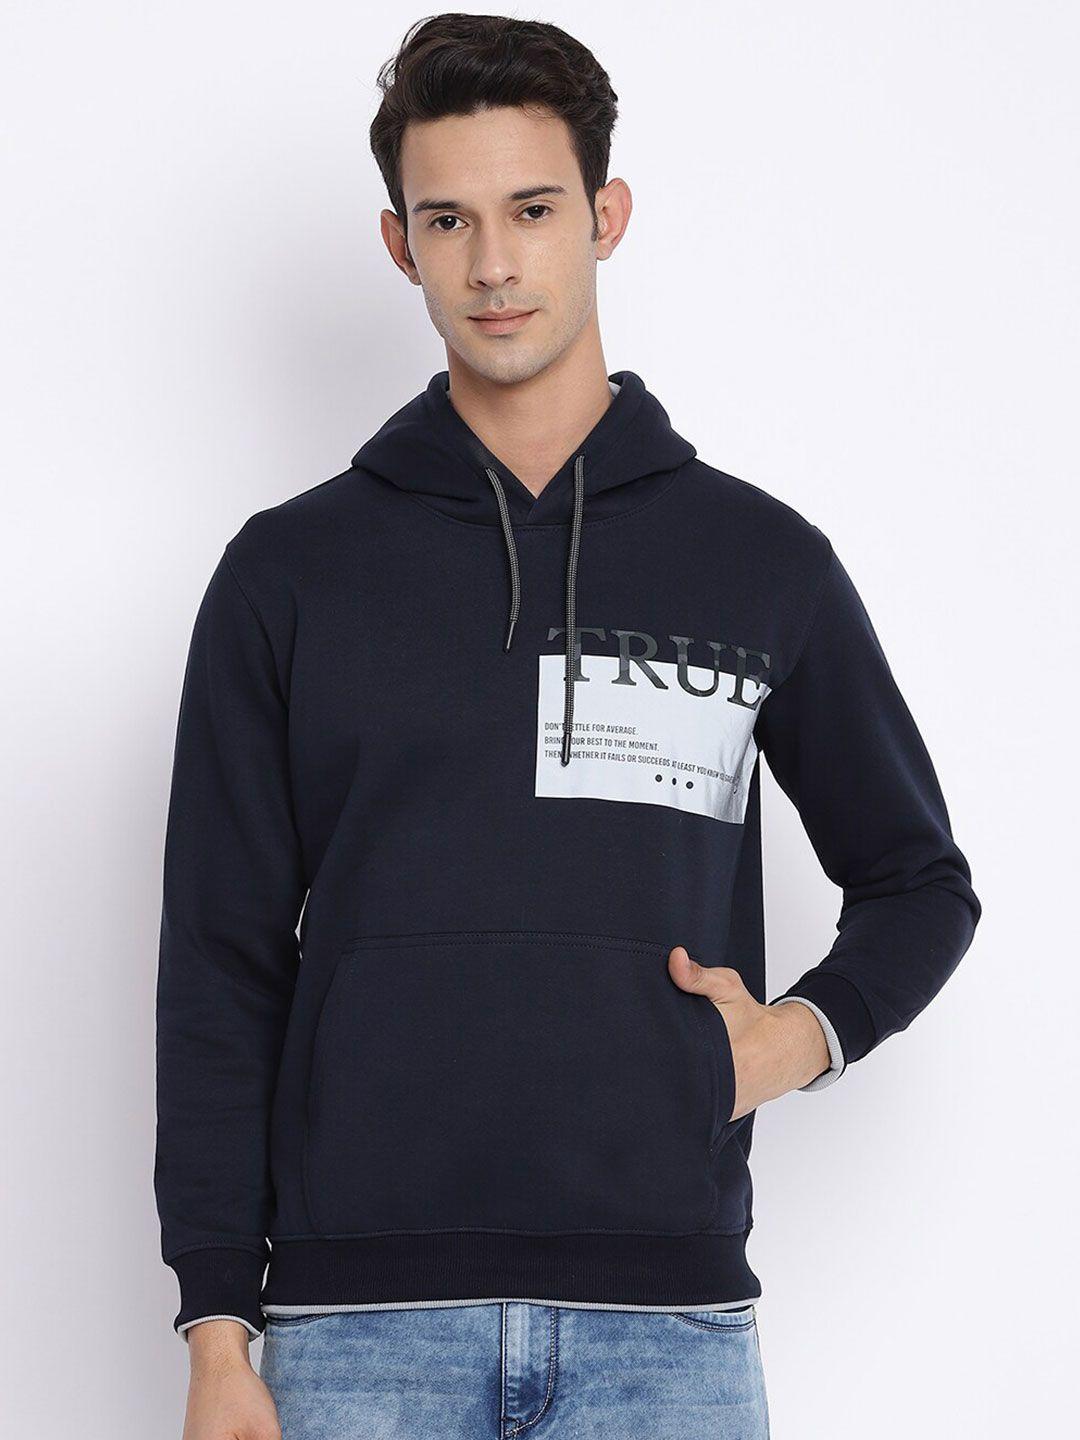 cantabil men navy blue printed hooded wool sweatshirt